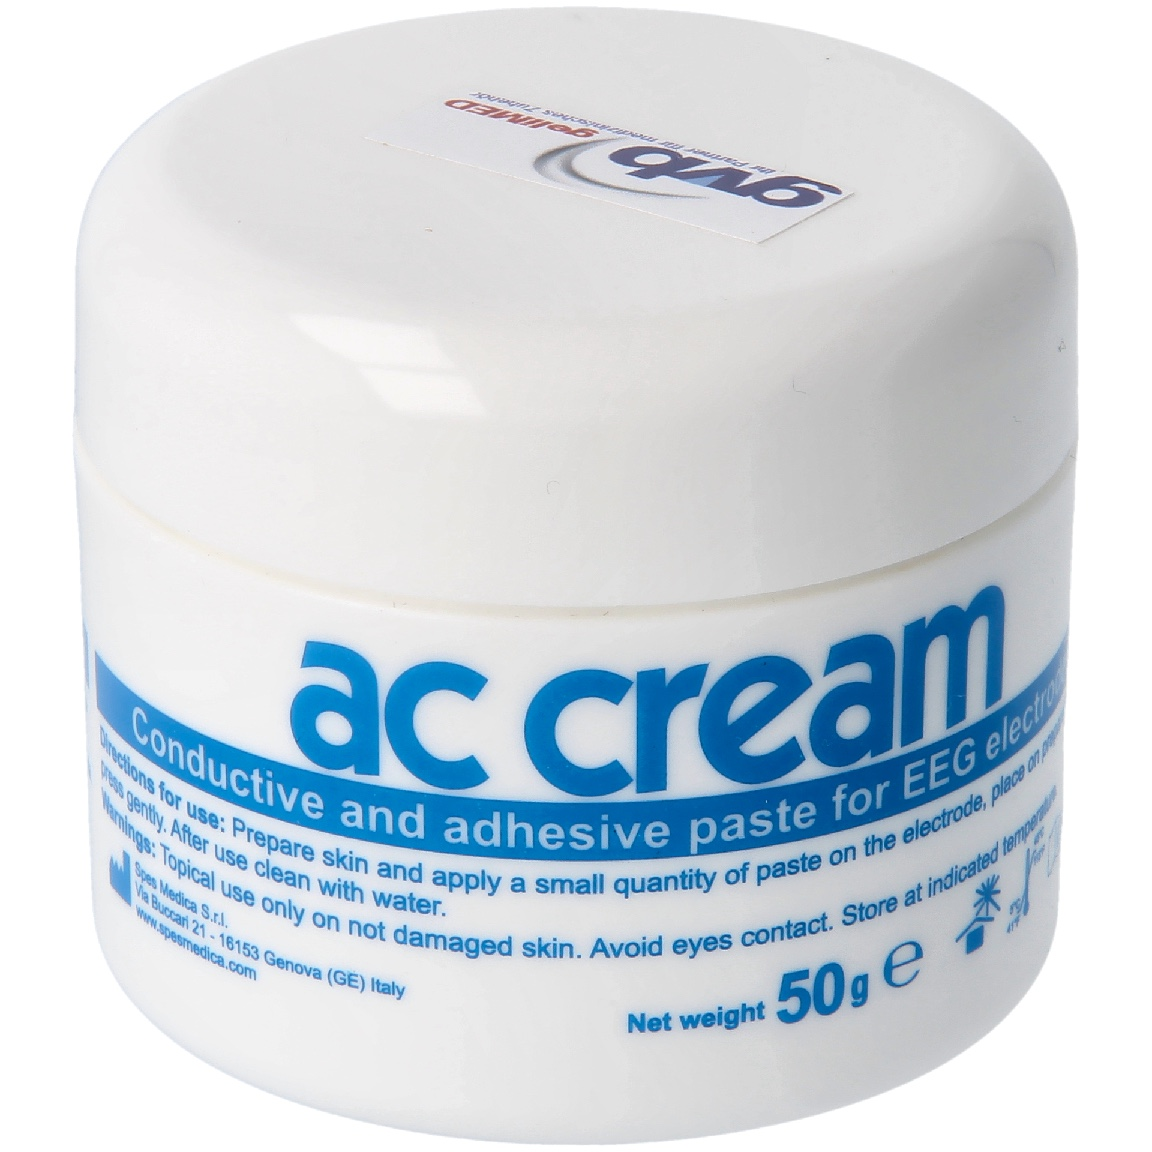 ACC-Cream